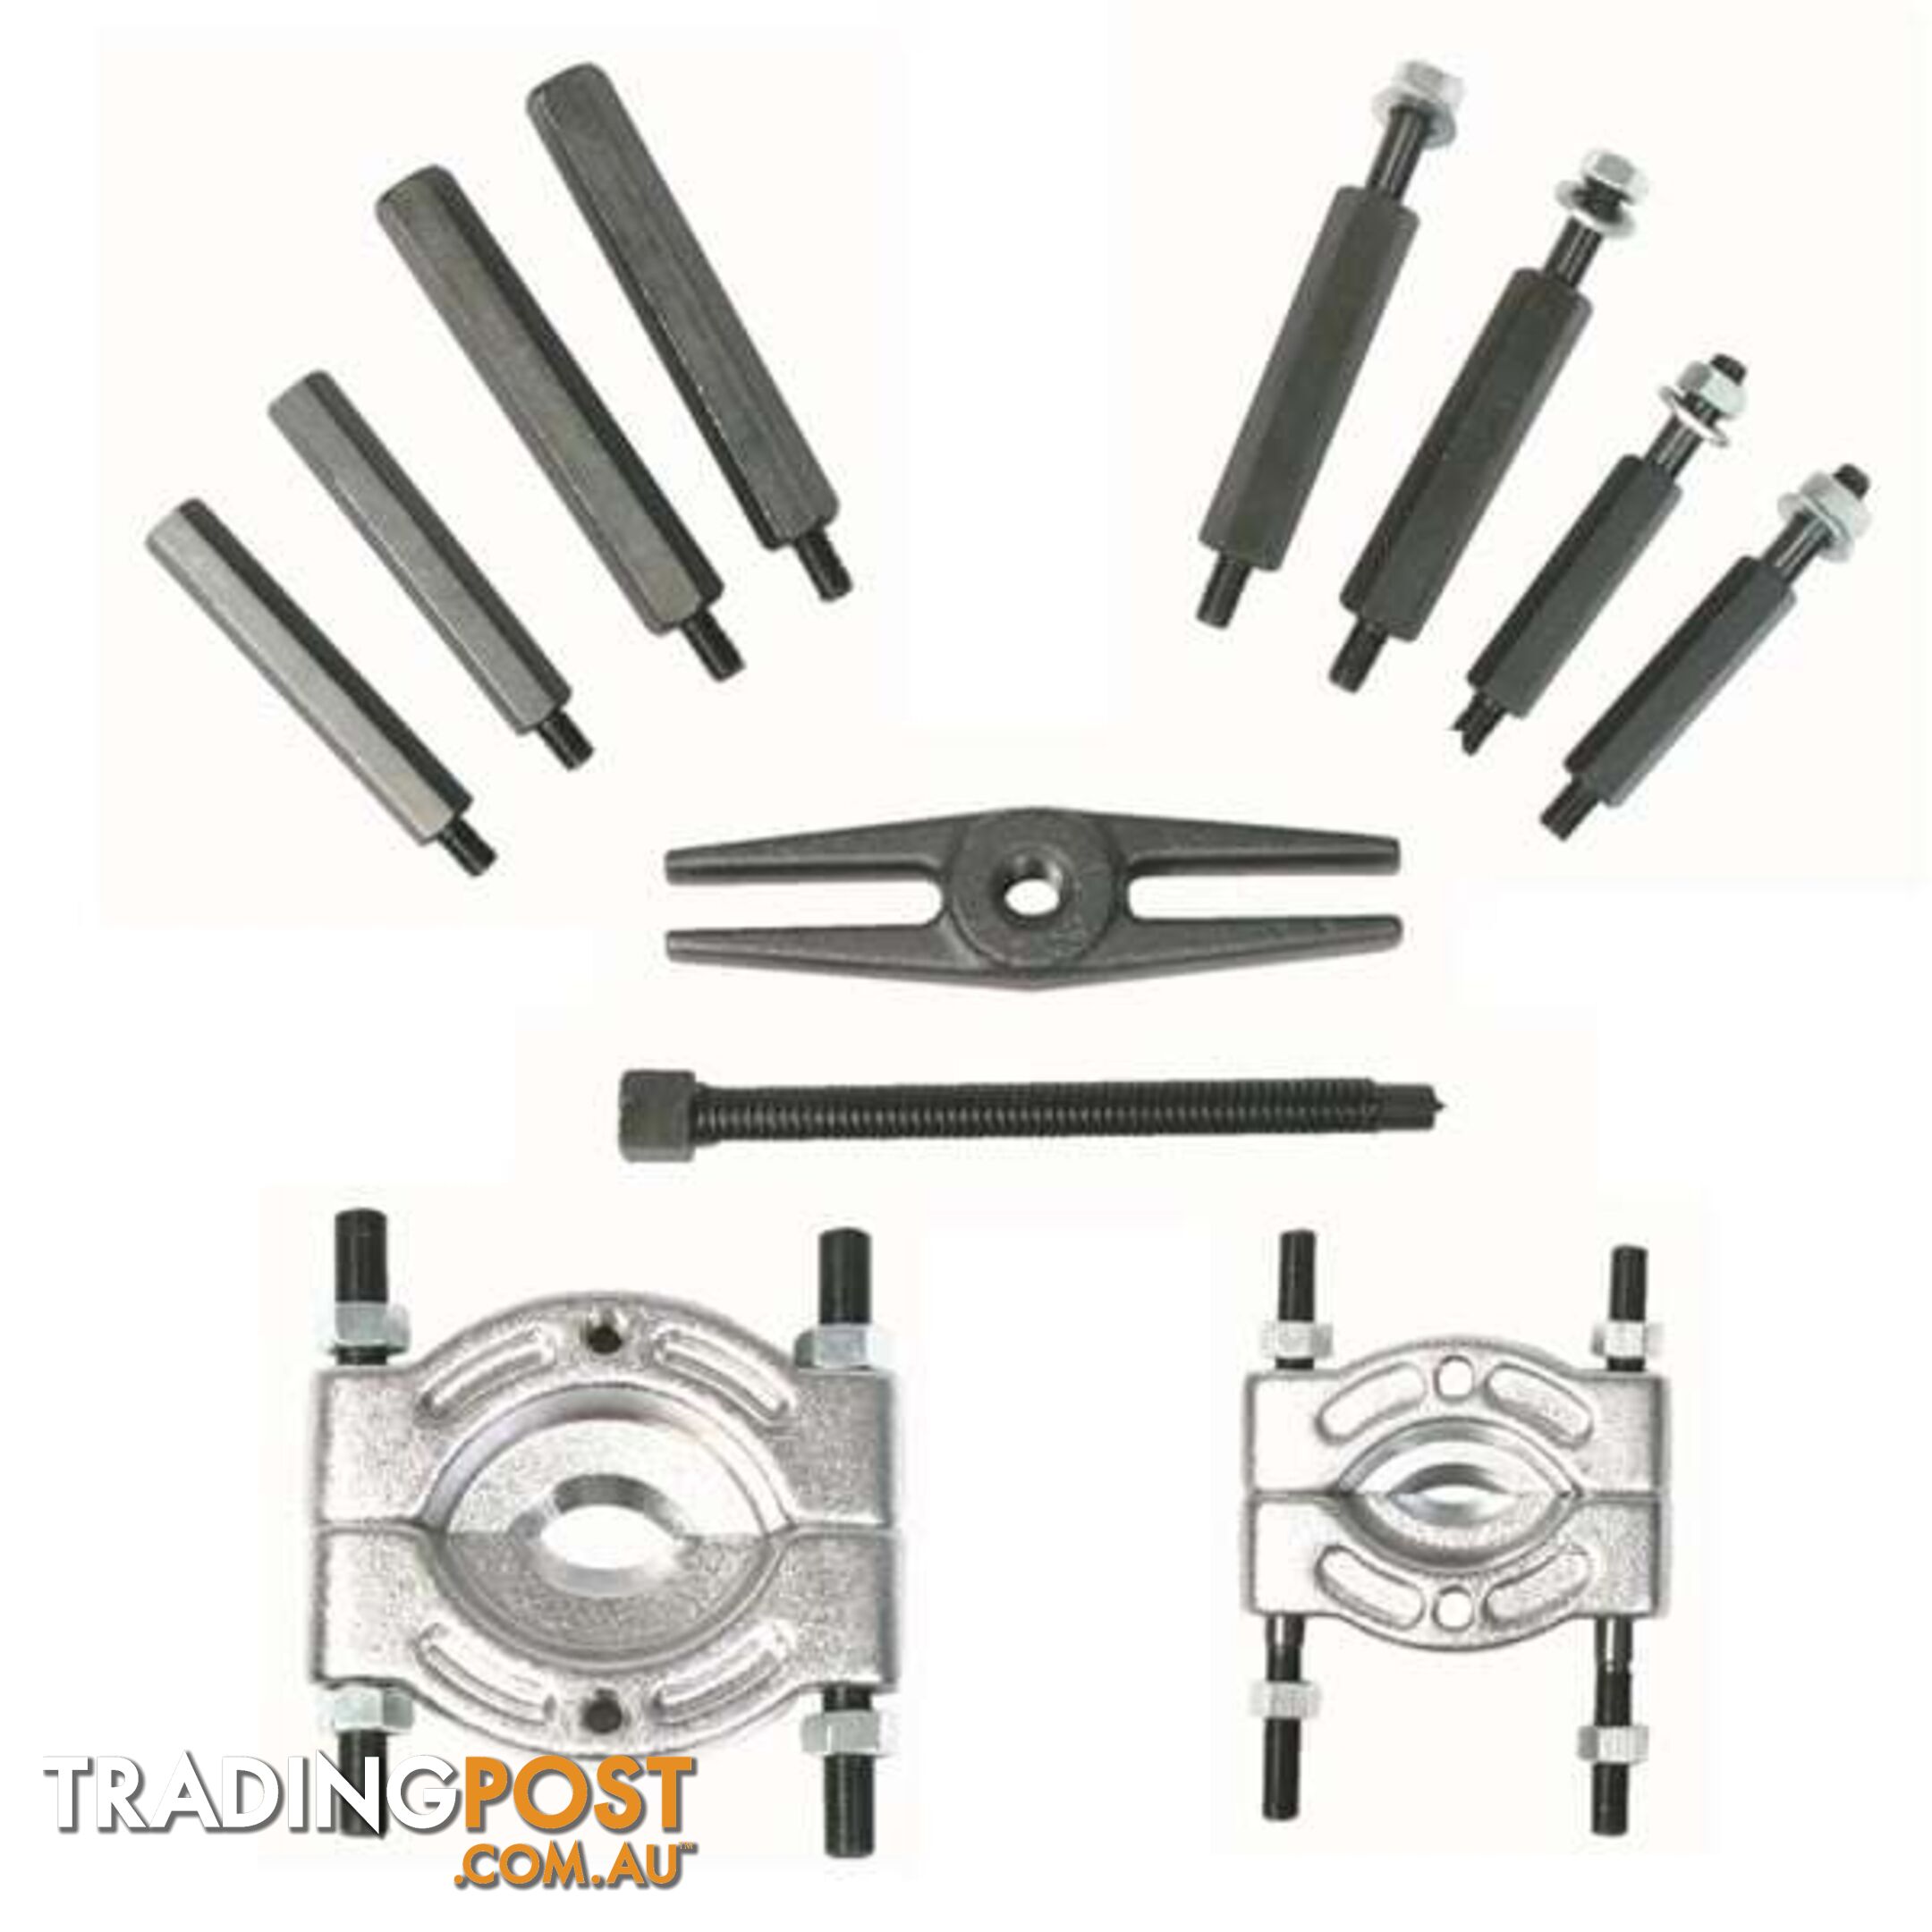 Bearing Separator Puller Kit Mechanical 12 Pc SKU - 221000